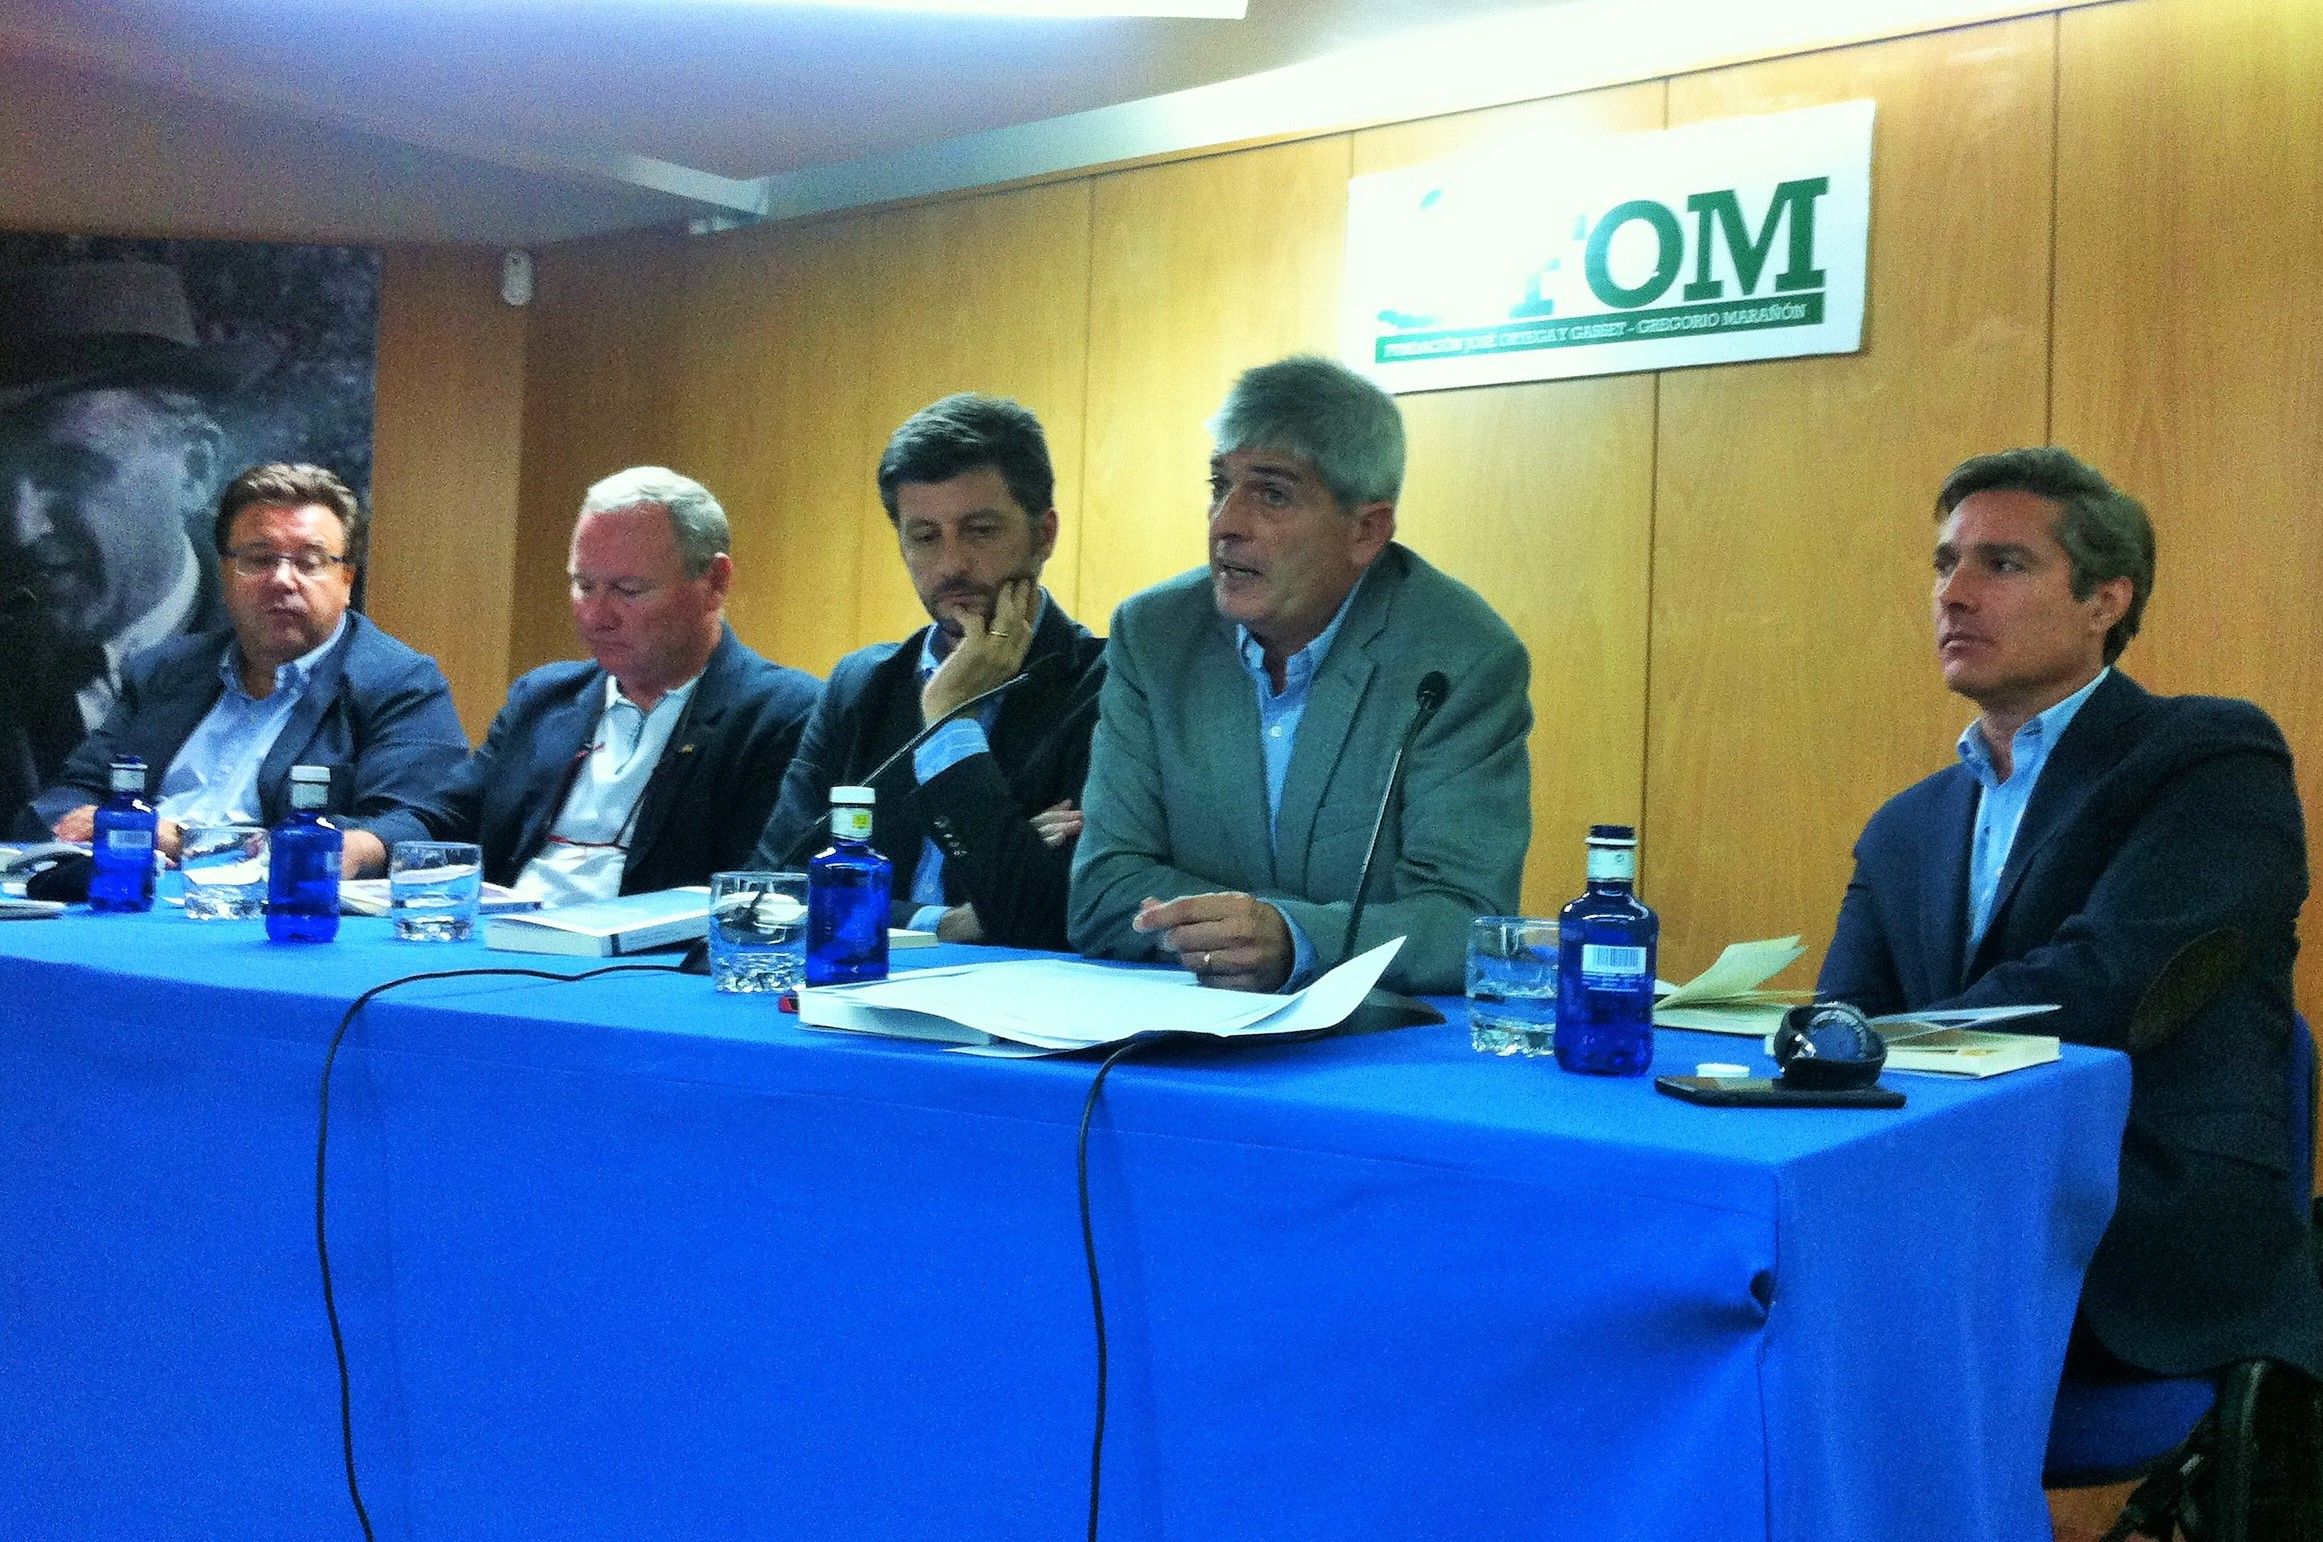 Reflexiones sobre Ortega en la FOM con motivo de la presentación de dos libros del grupo